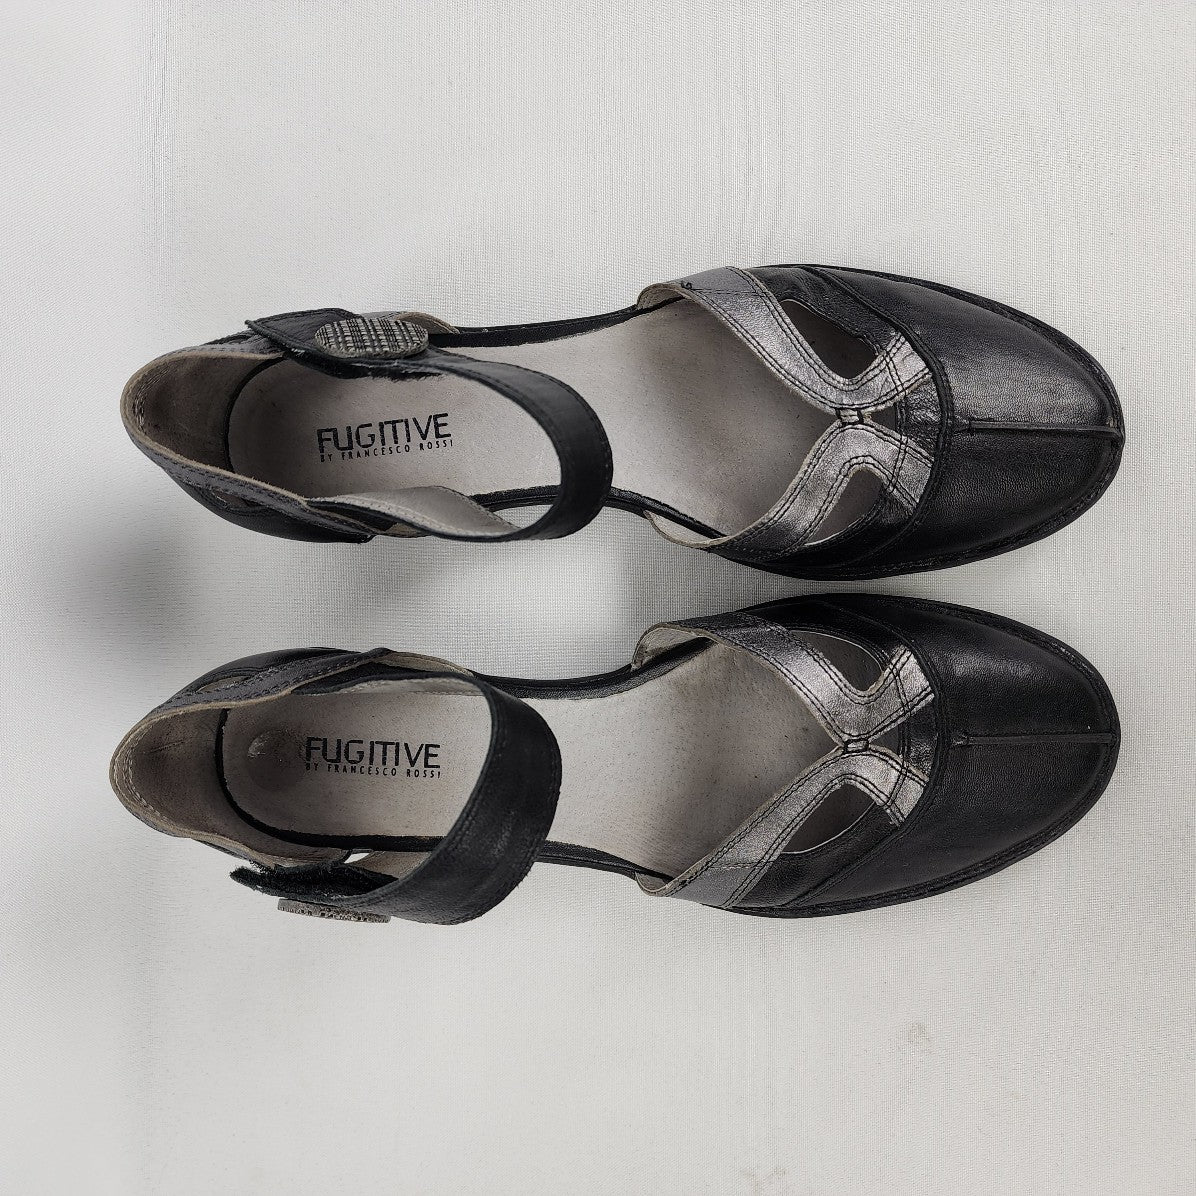 Fugitive Black Leather Mary Jane Shoes Size 9